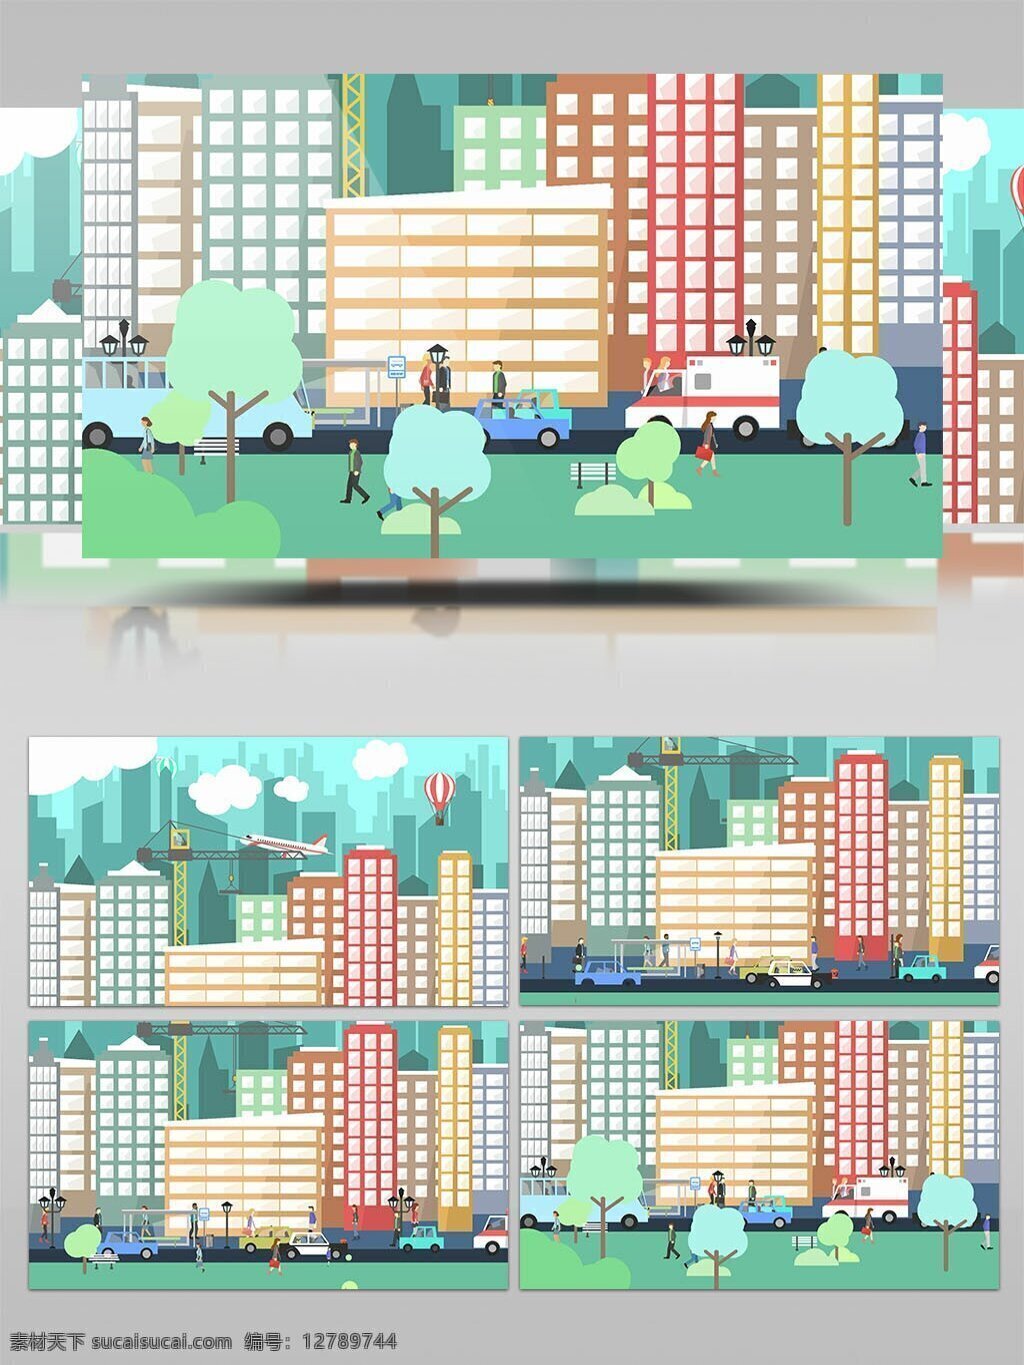 扁平 mg 动画 ae 元素 库 城市 建筑 模板 宣传 道路 mg动画 展示 行人 ae模板